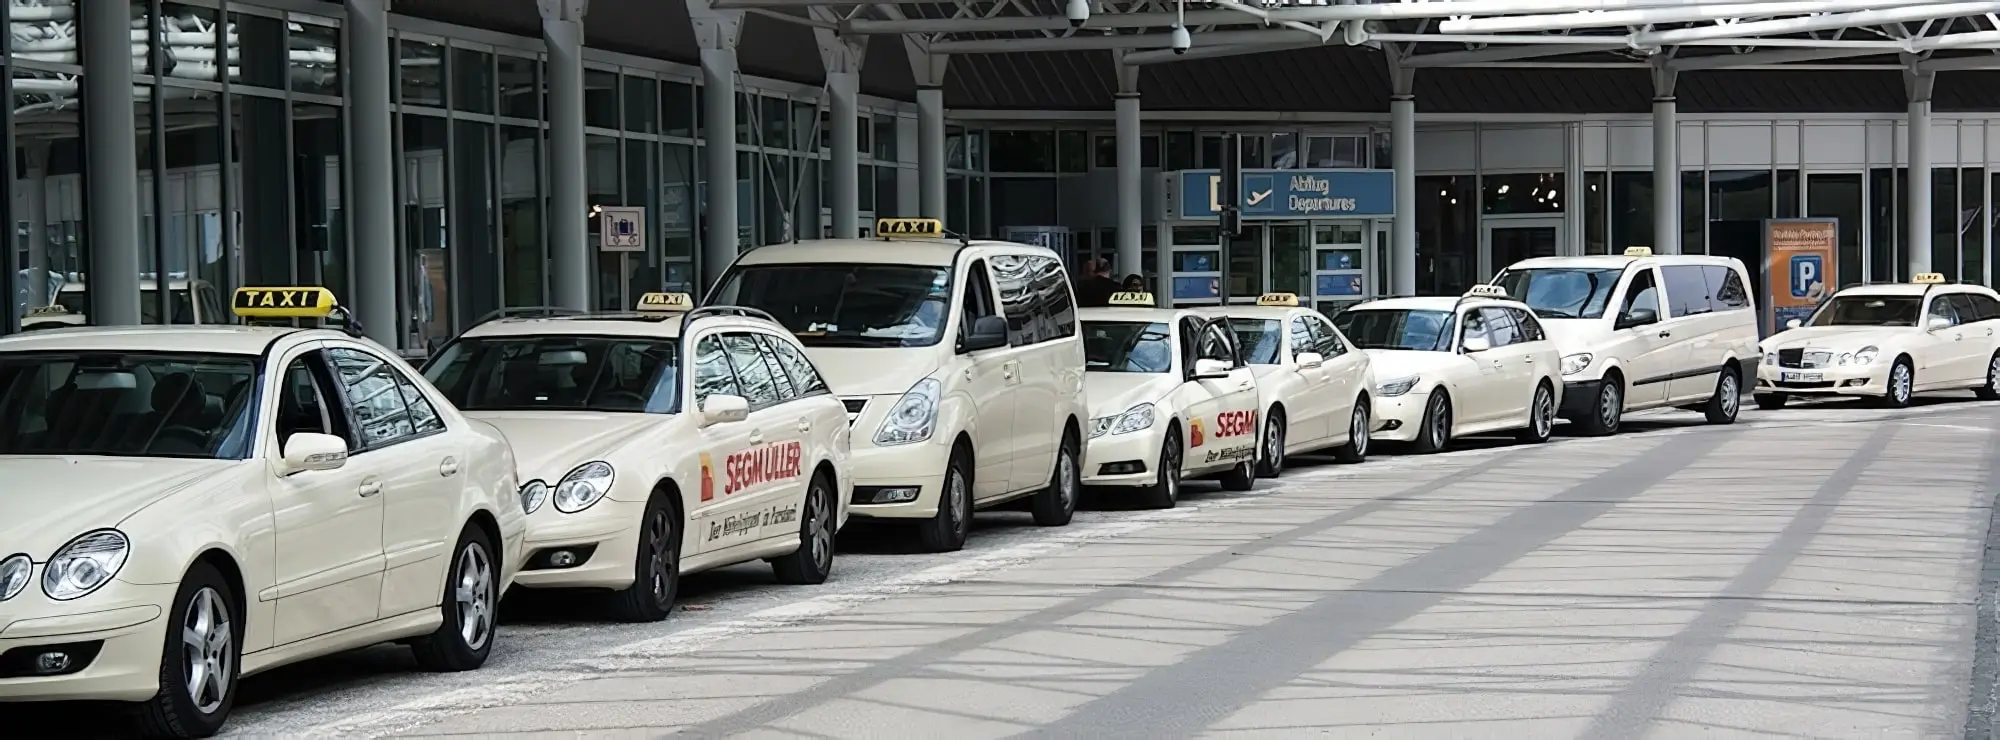 prix taxi seville aeroport centre ville - Où prendre le bus EA à l'aéroport de Séville